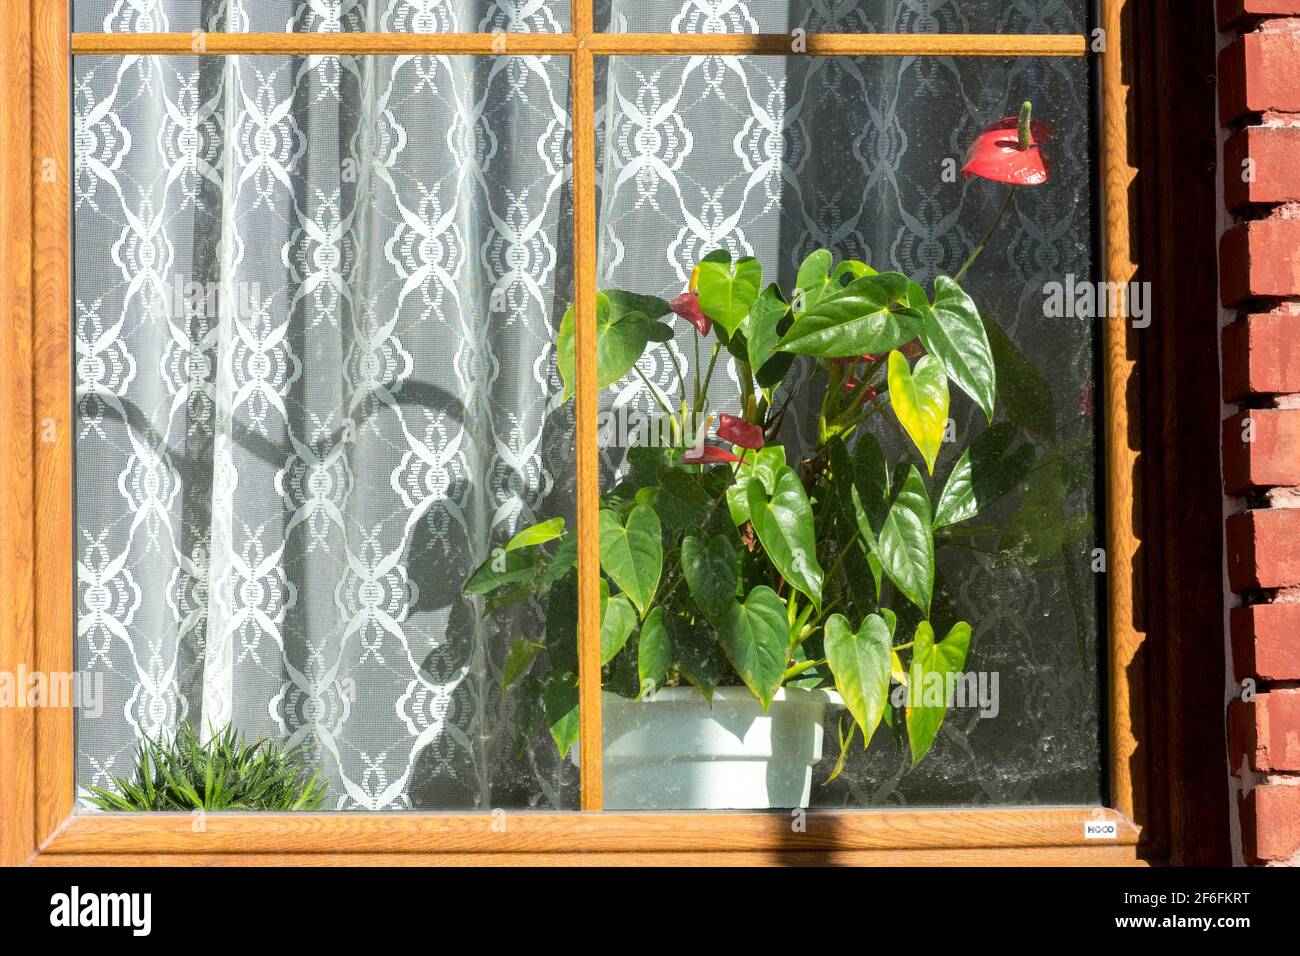 Anthurium maison usine dans pot sur le seuil de fenêtre, rideau de fenêtre pas personne Banque D'Images